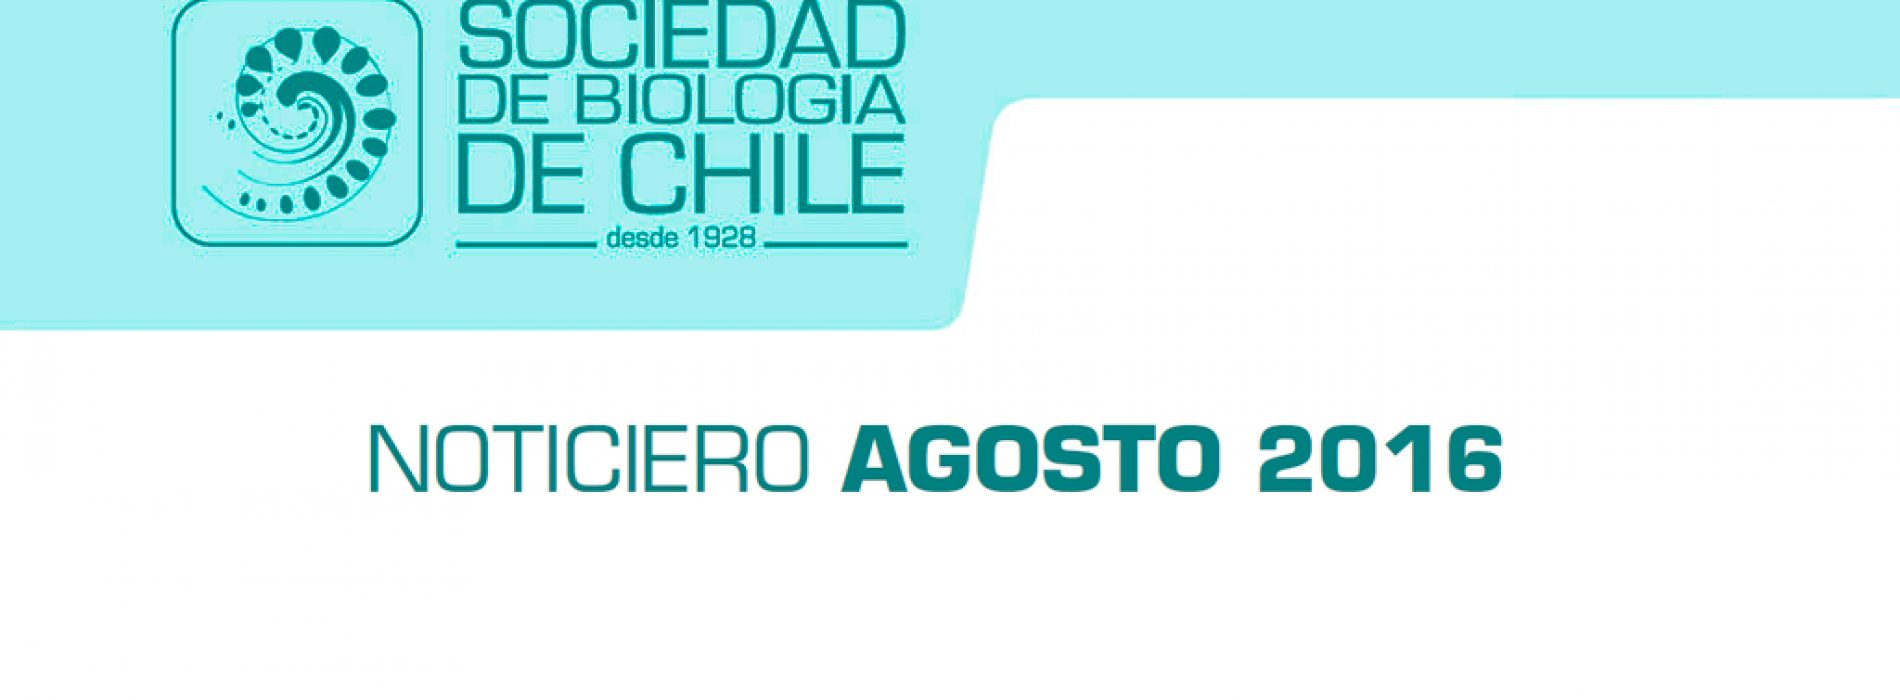 Noticiero Agosto 2016. Sociedad de Biología de Chile